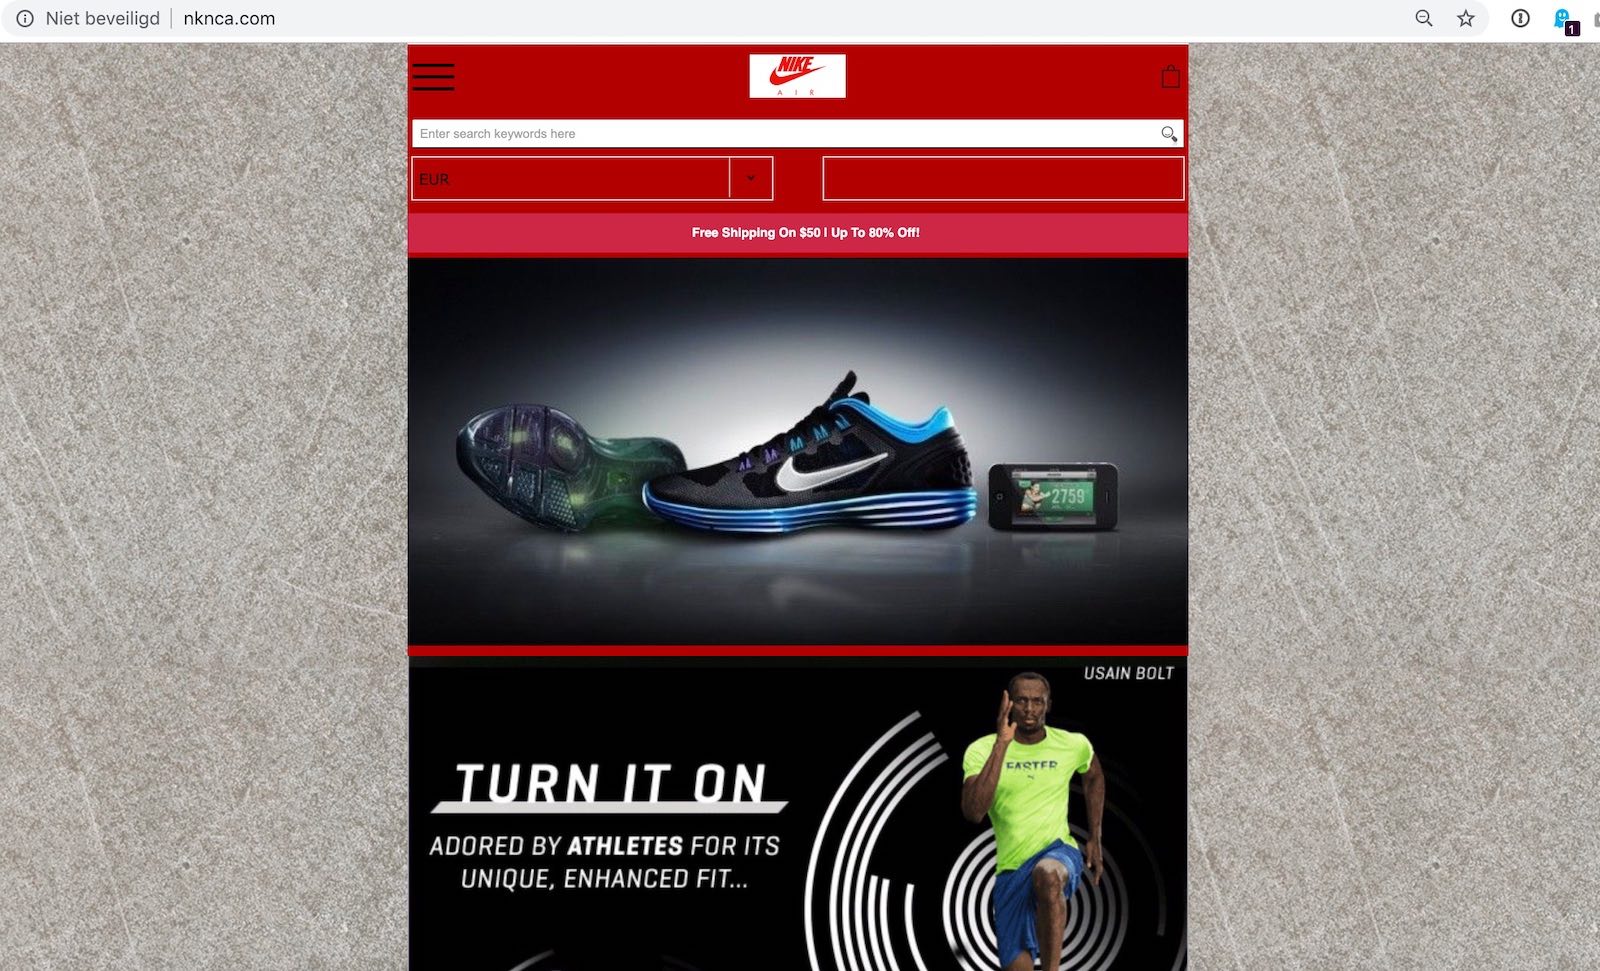 Nike nknca.com